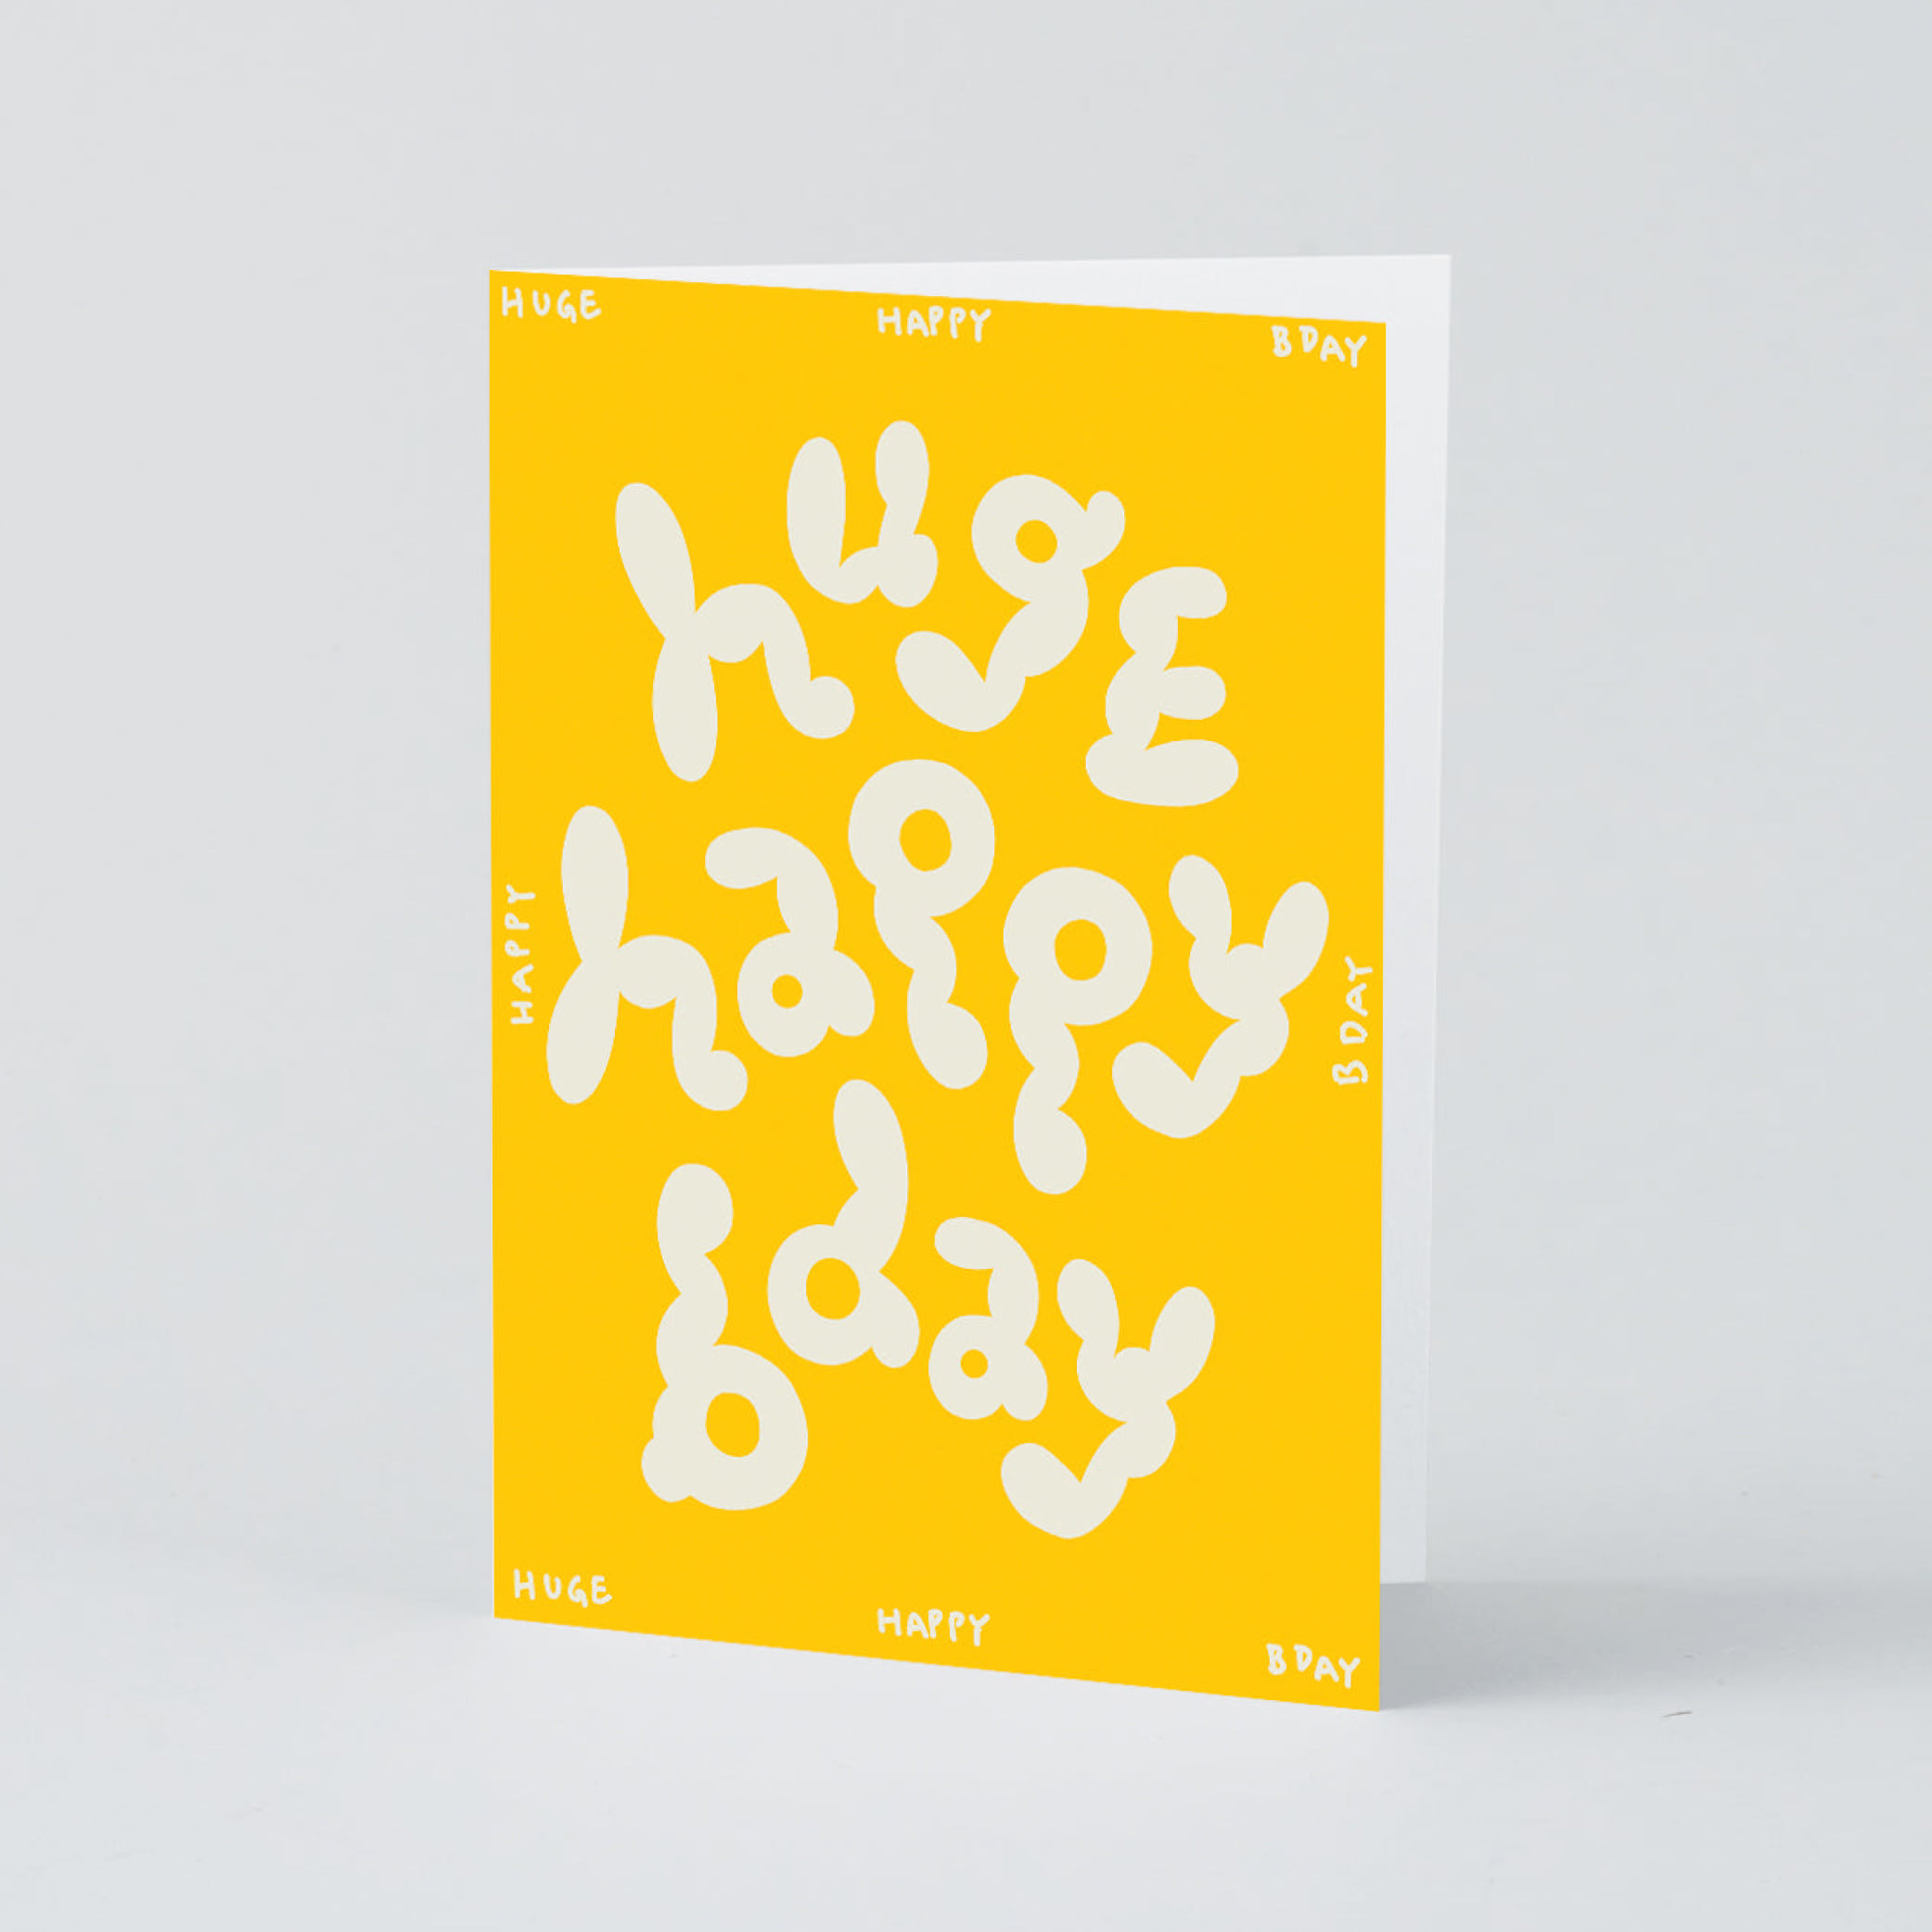 [WRAP] Huge Happy Bday Embossed Greetings Card